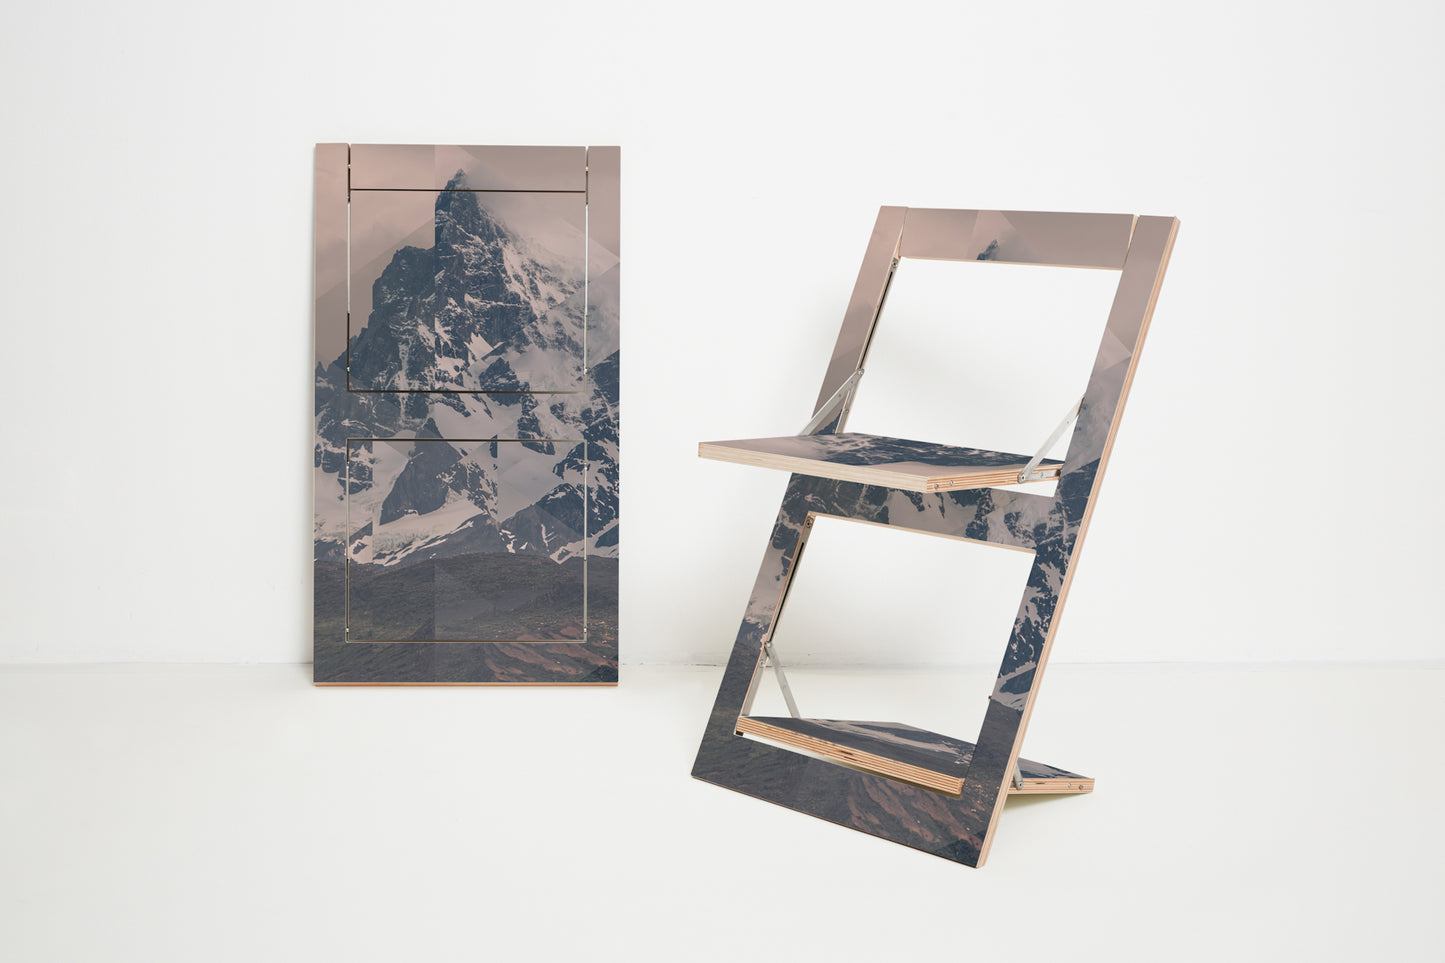 Fläpps Folding Chair – Puerto Natales